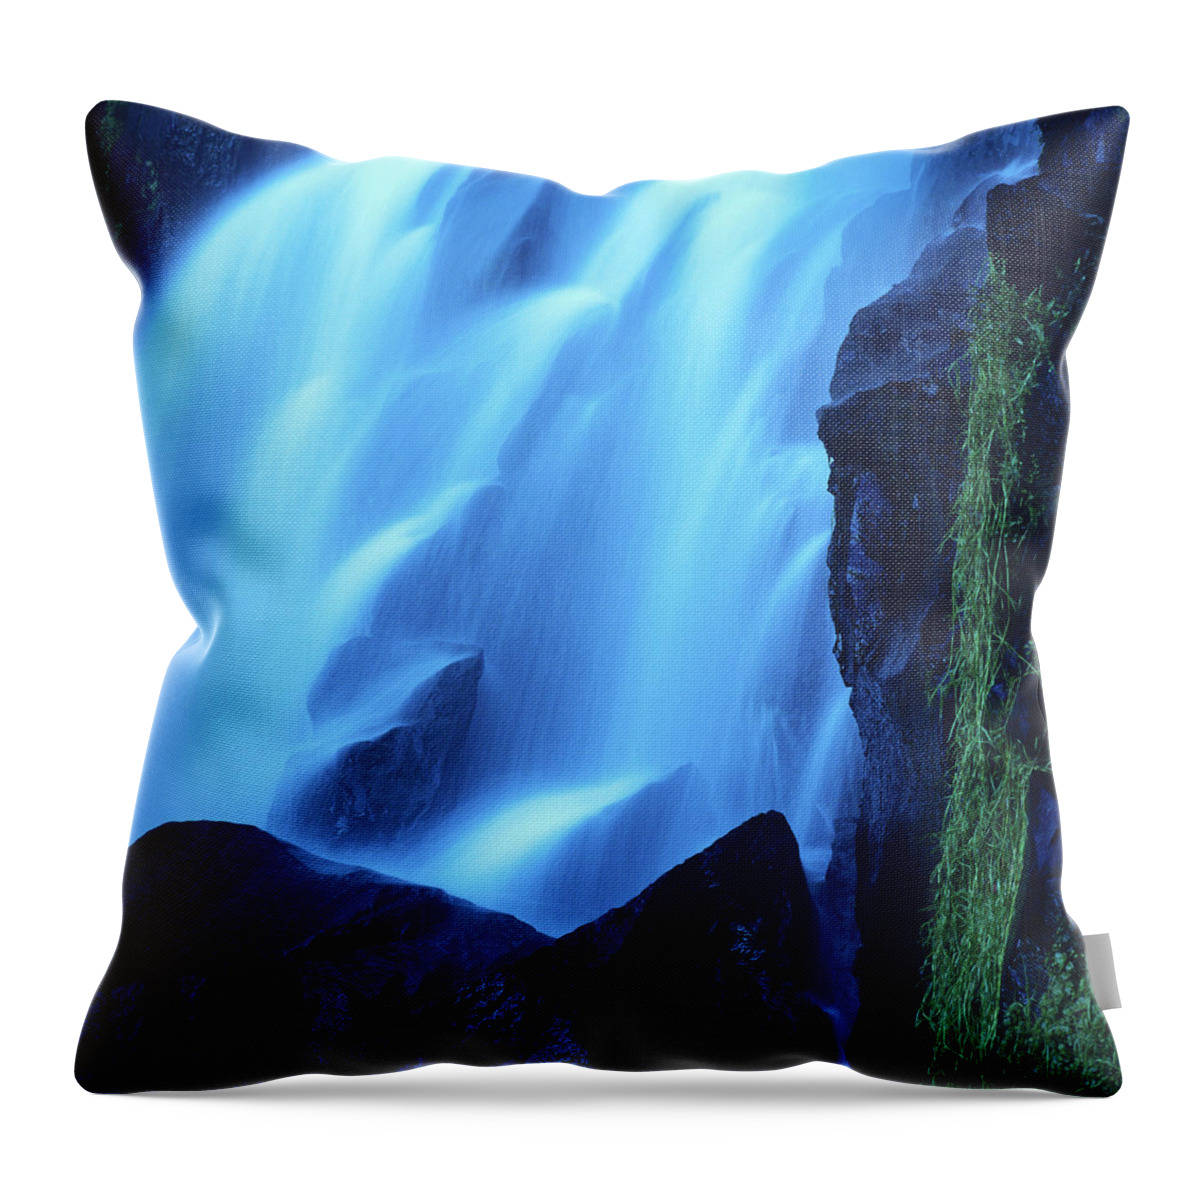  French Throw Pillow featuring the photograph Blue waterfall by Bernard Jaubert